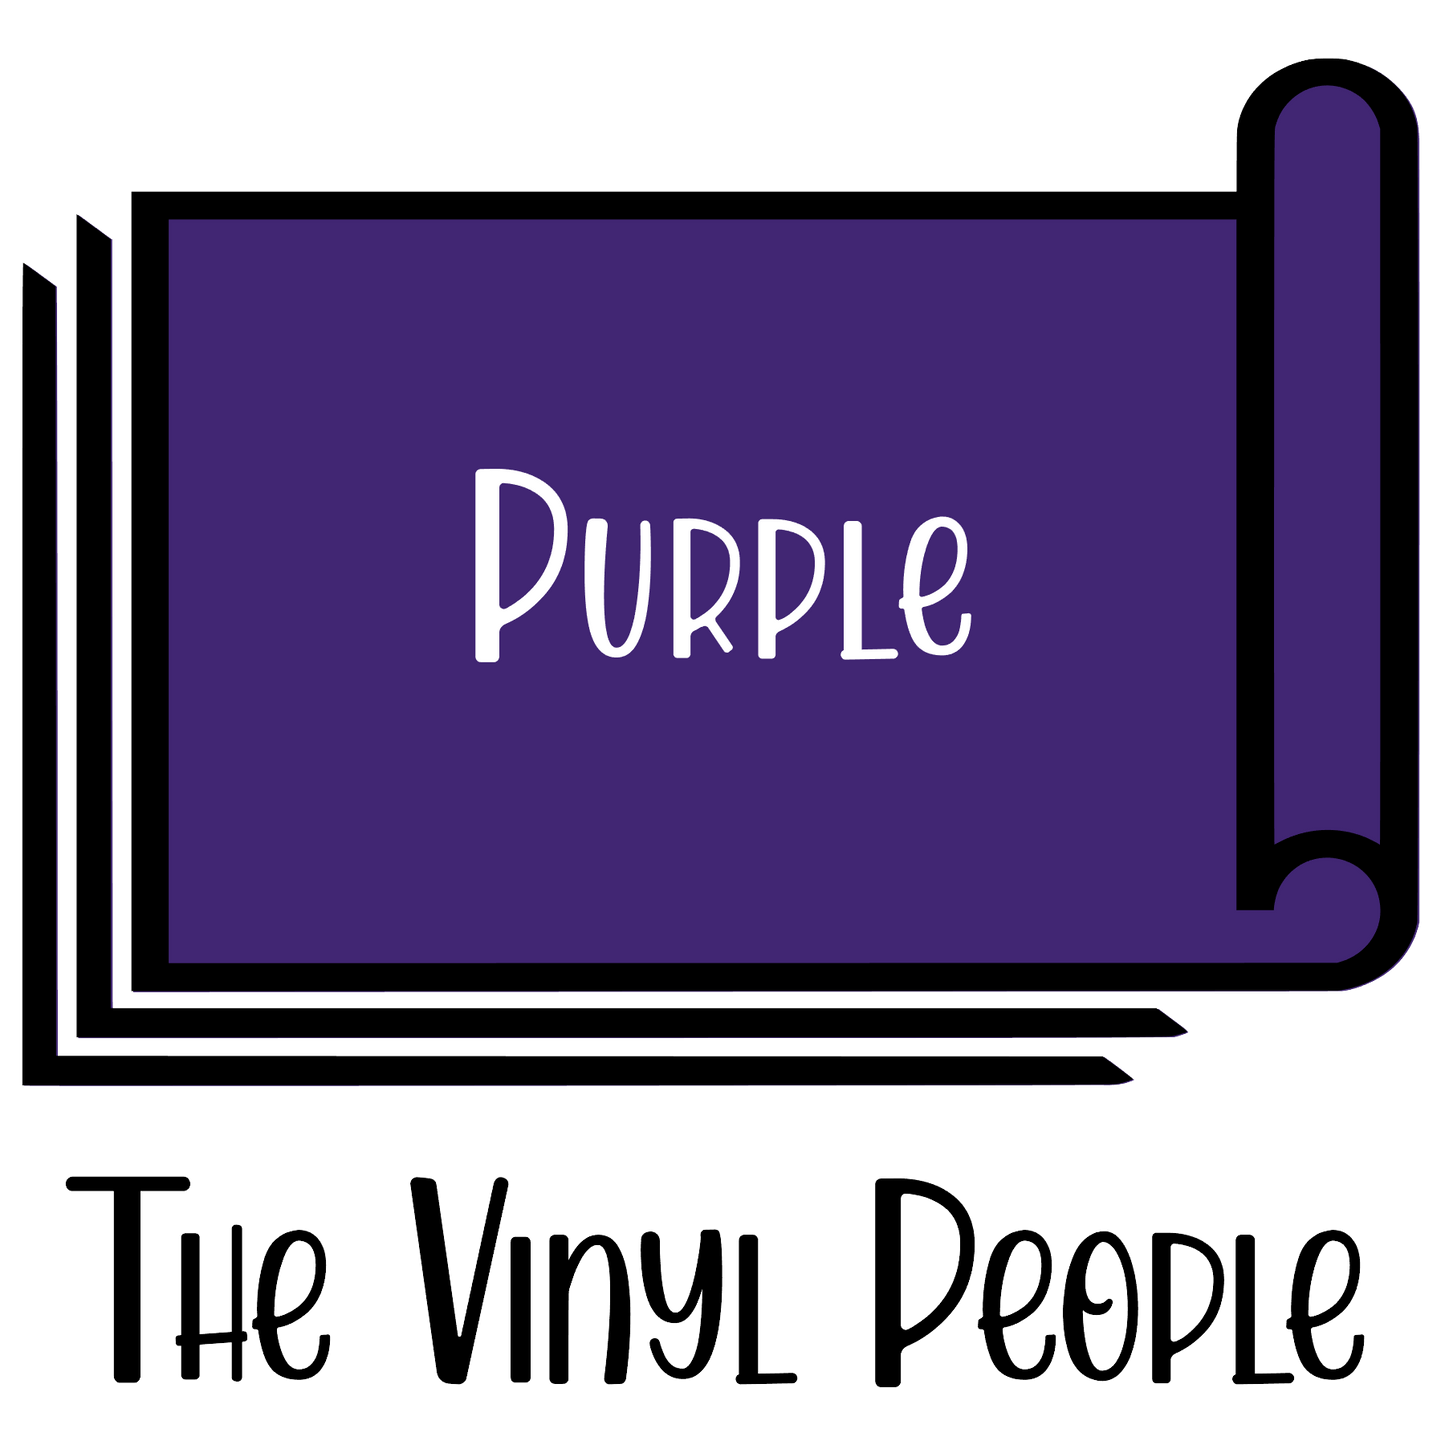 Purple Oracal 651